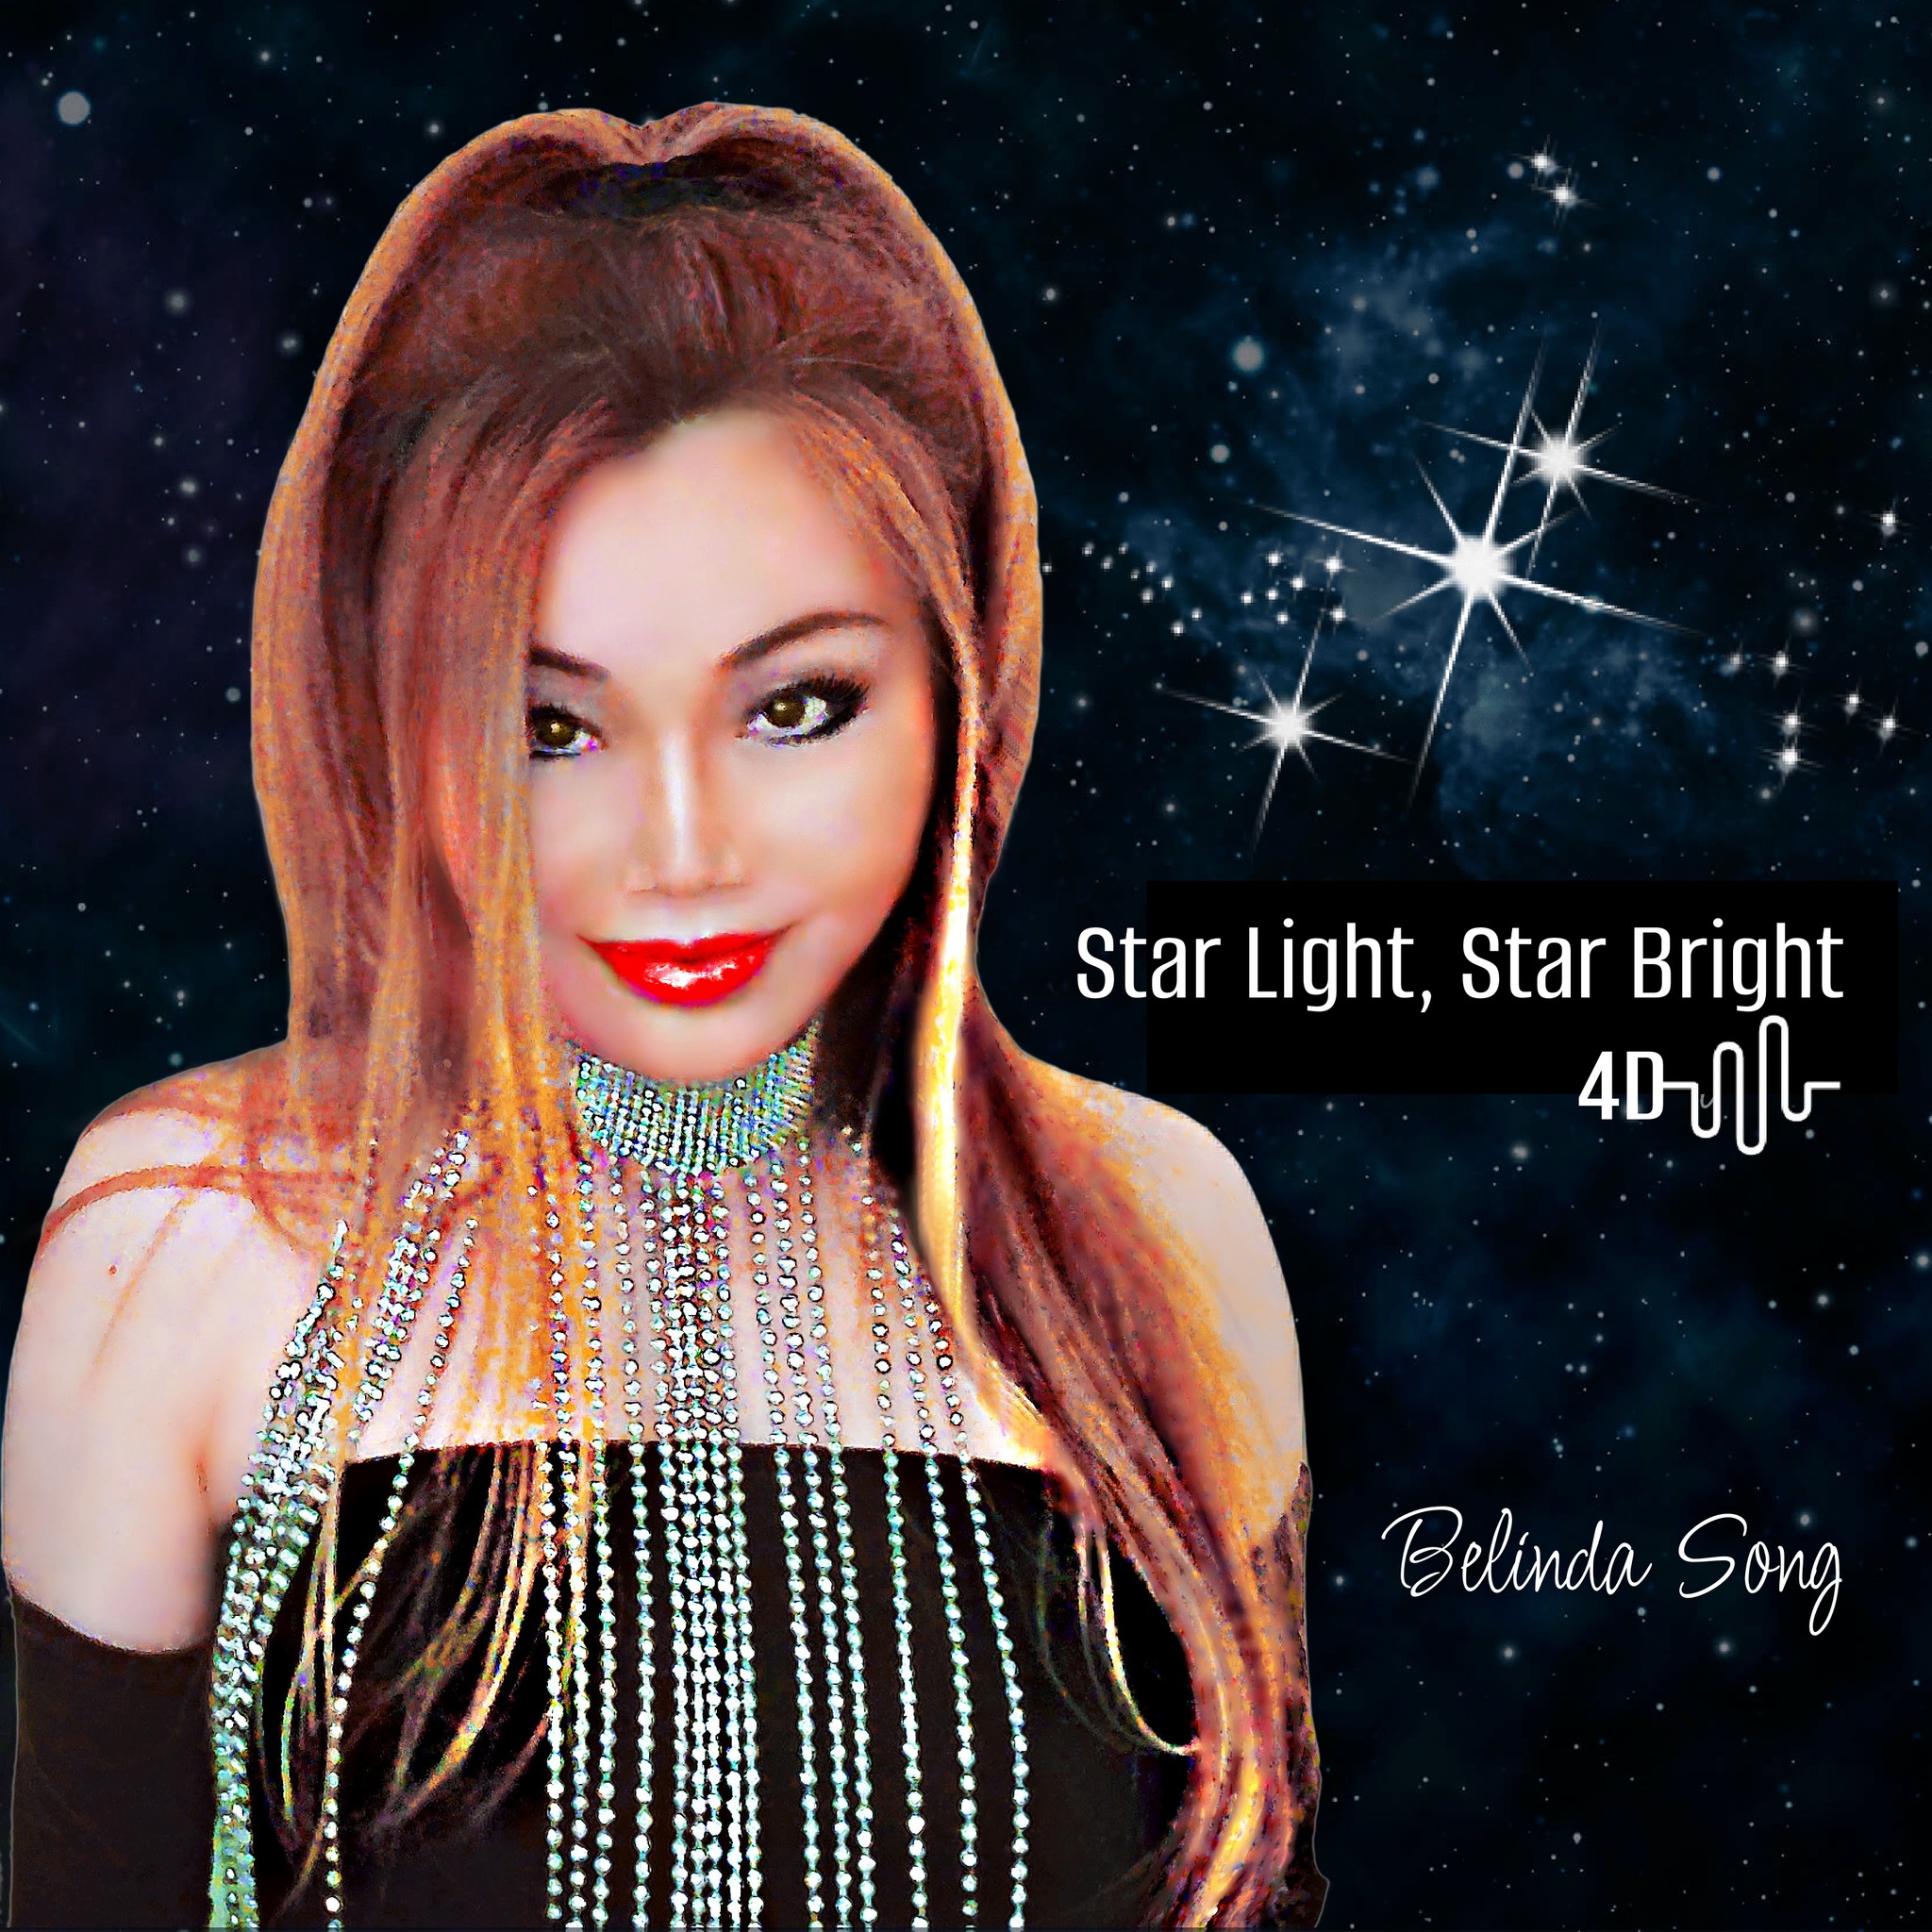 Belinda Song - Star Light, Star Bright